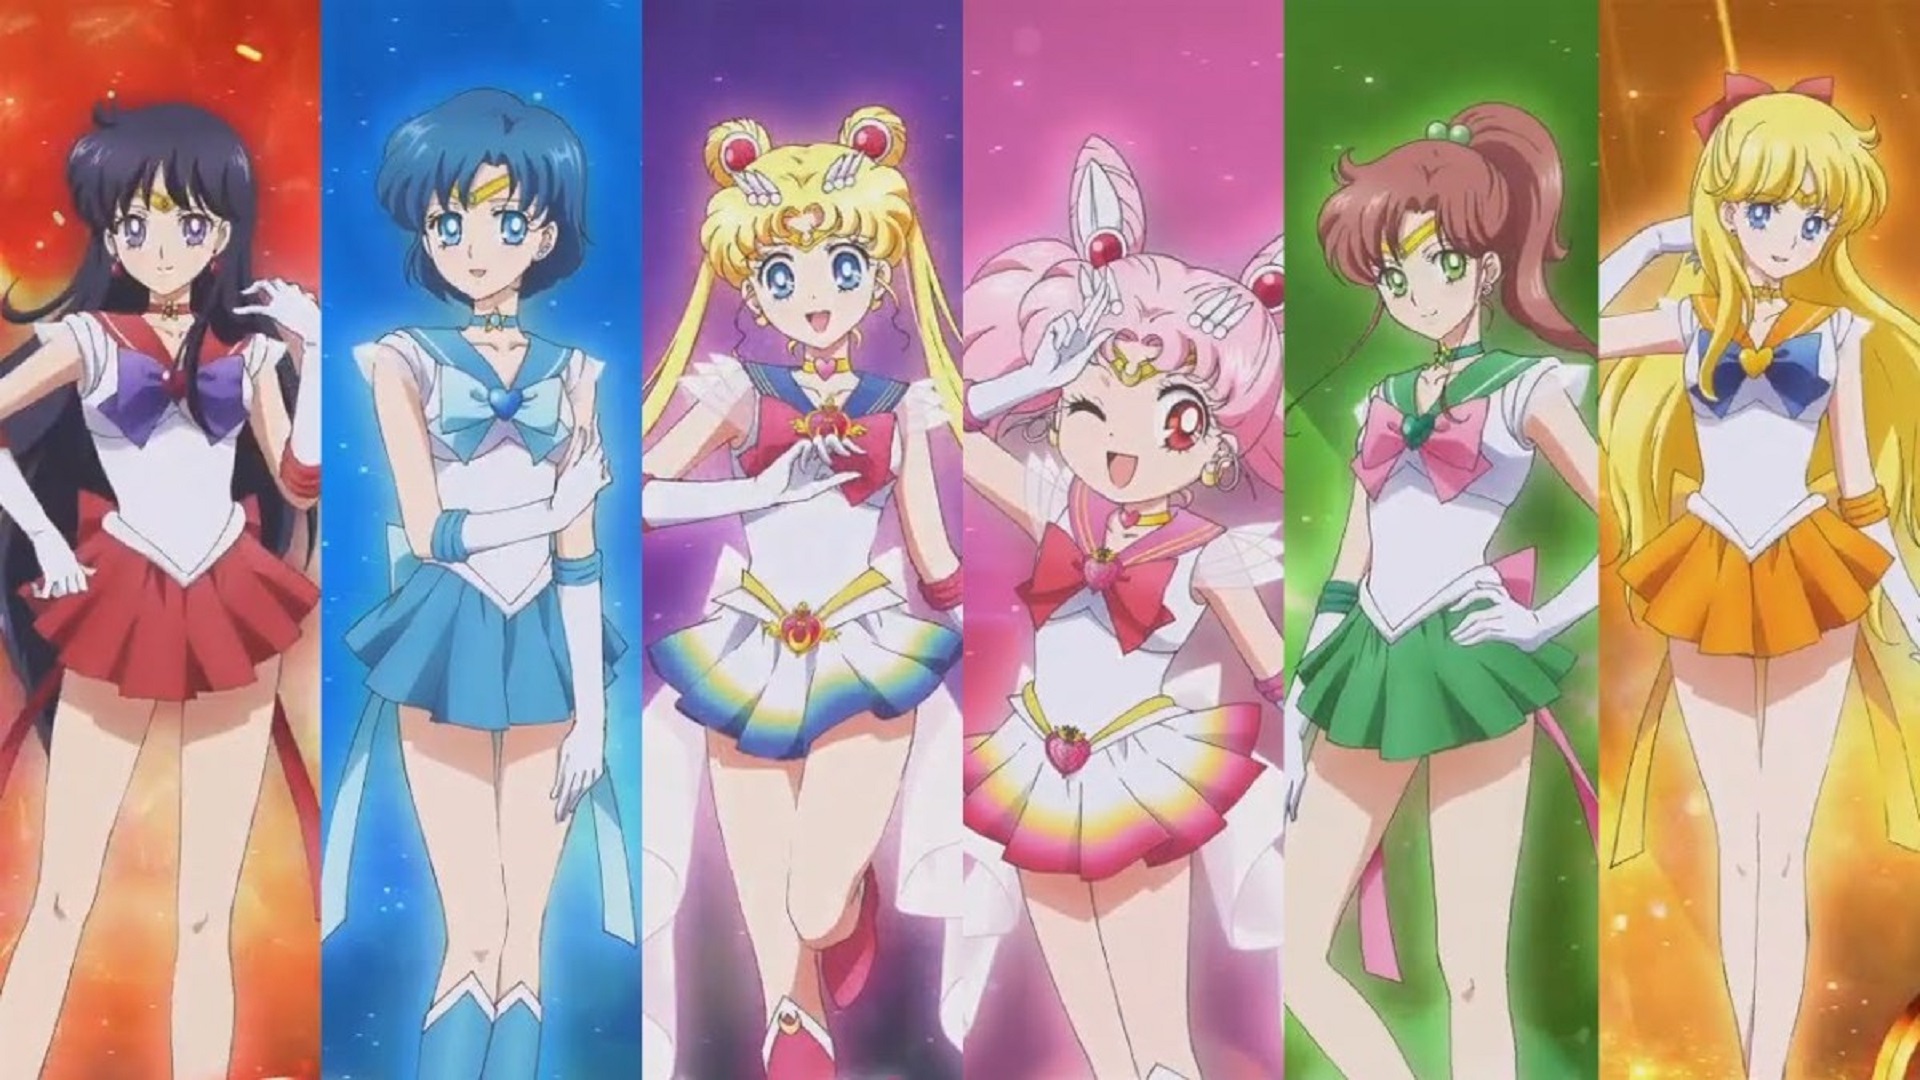 ¡Por el poder del prisma lunar! Sailor Moon llegará a Netflix EstiloDF